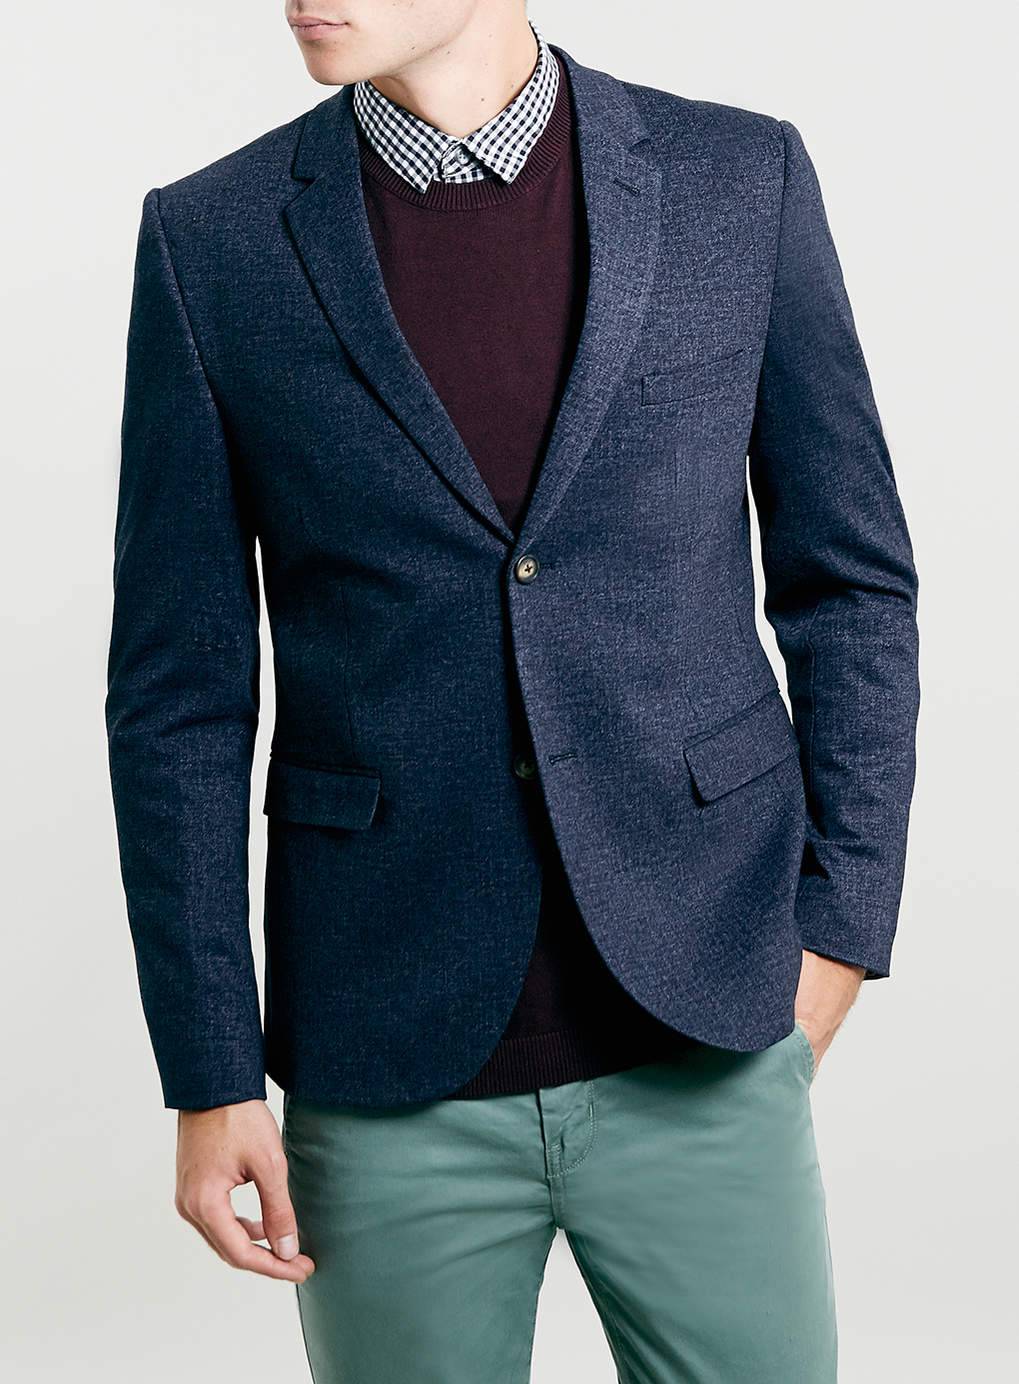 Мужской пиджак (блейзер): как выбрать и с чем носить?